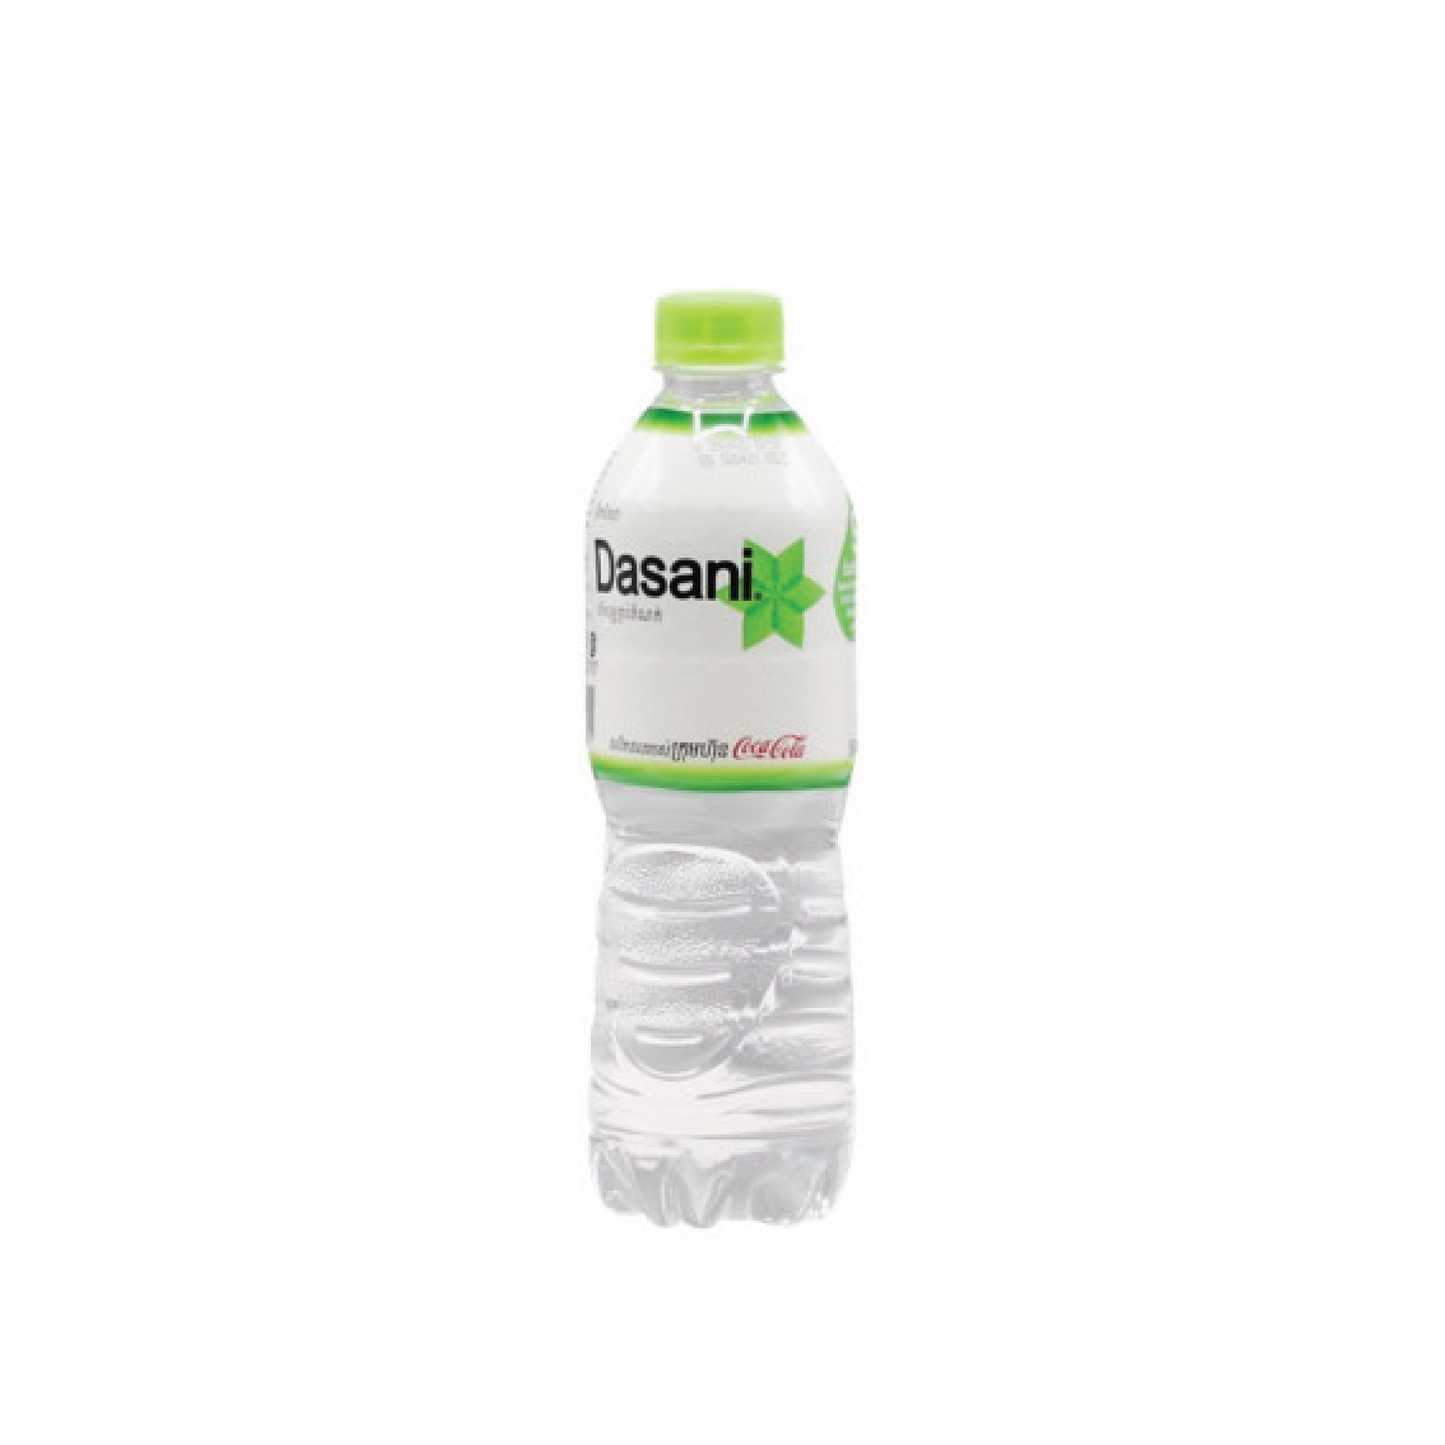 Dasani Water 500ml Bottle